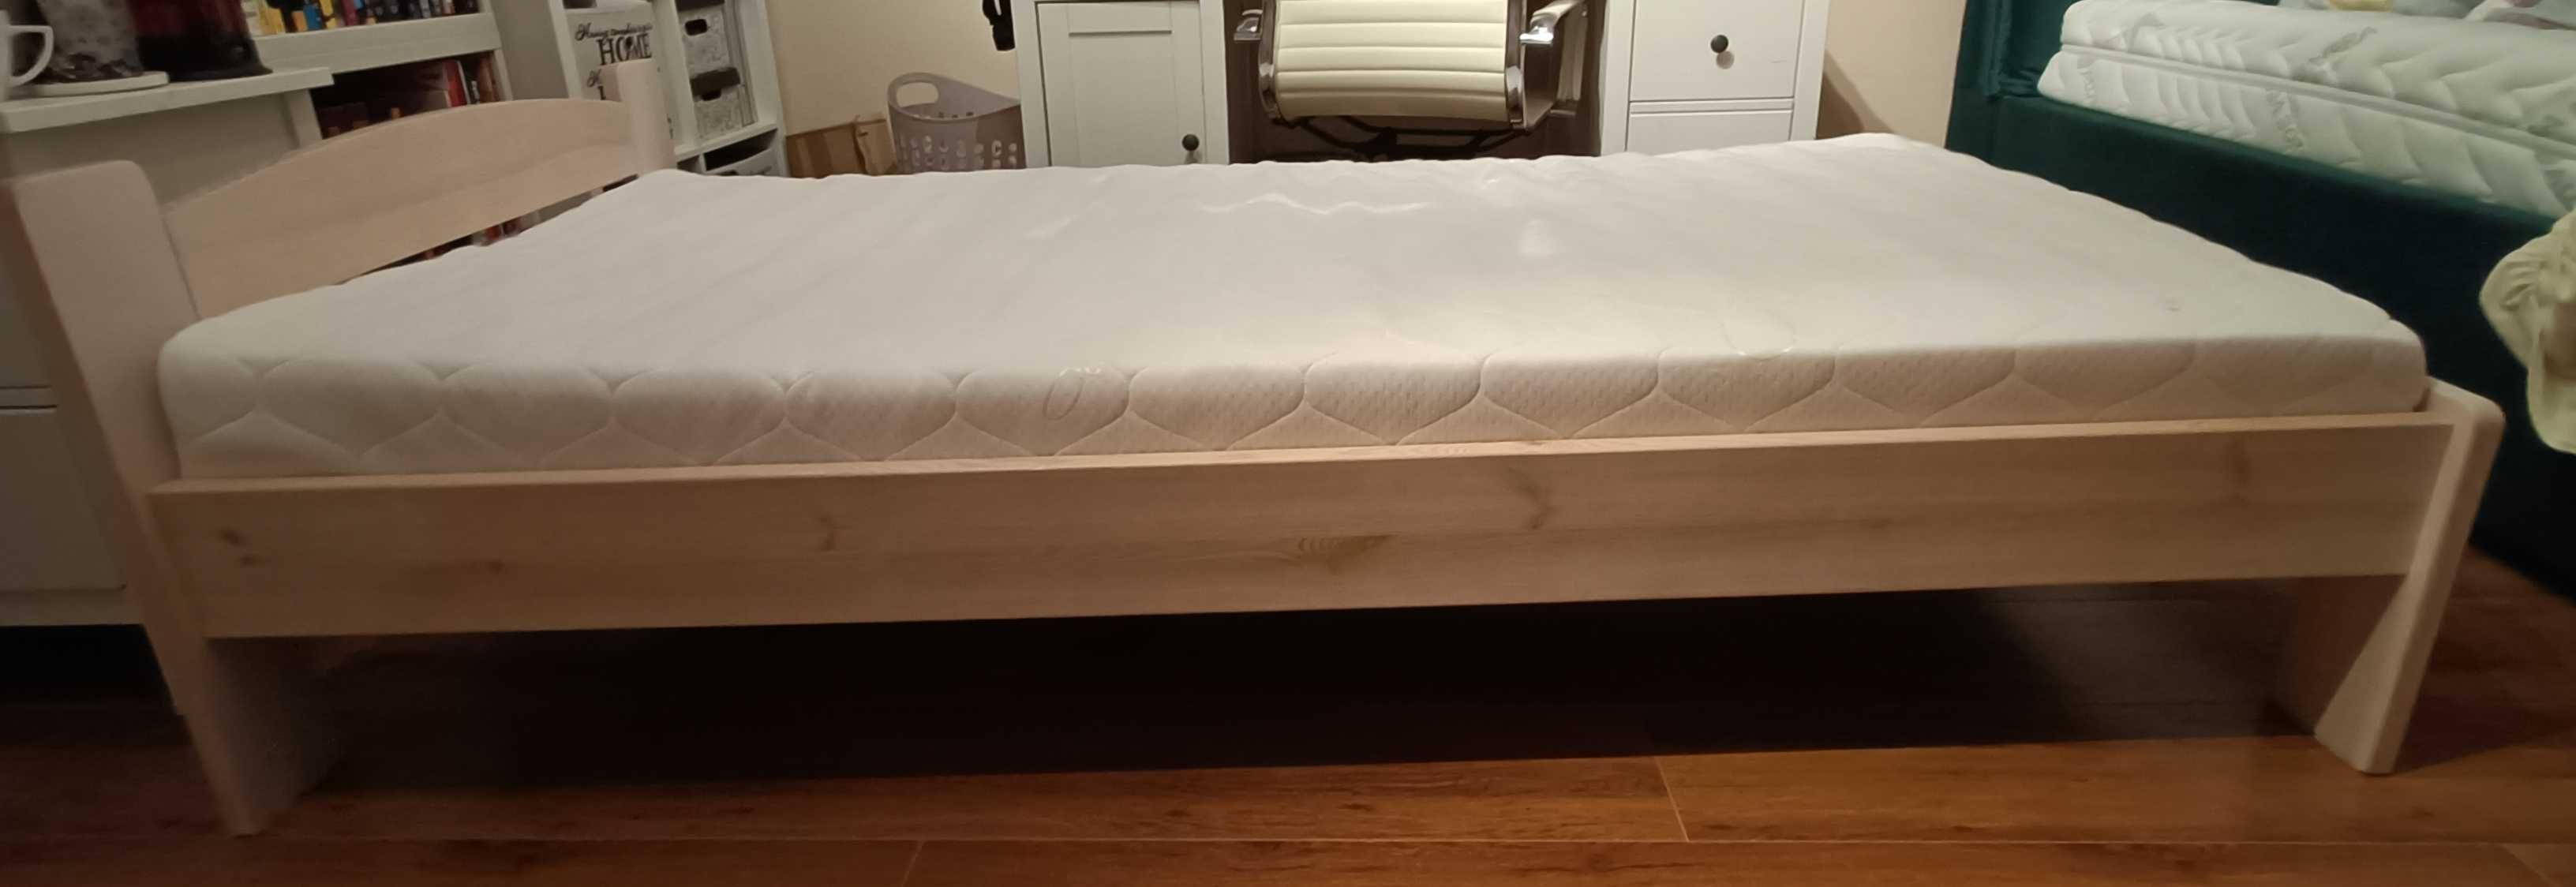 Łóżko pojedyńcze z materacem